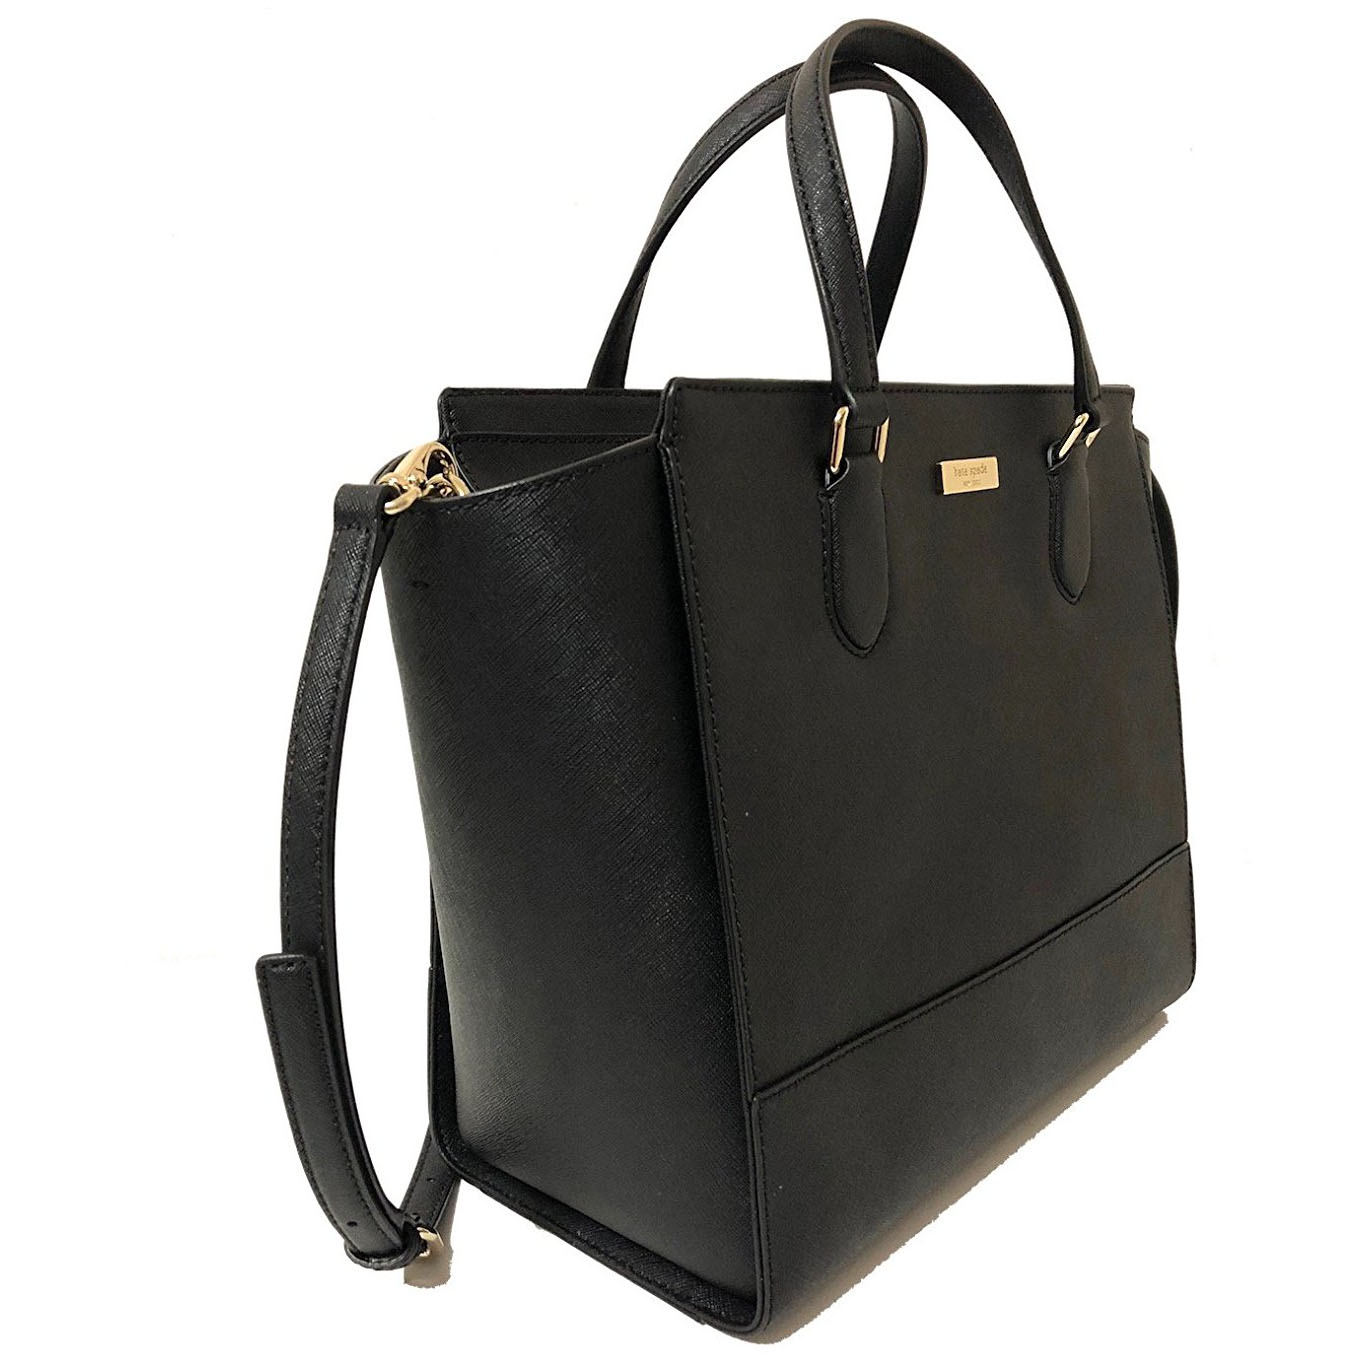 Kate Spade Crossbody Bag With Gift Bag Laurel Way Hadlee Satchel Crossbody Bag Black # WKRU5317